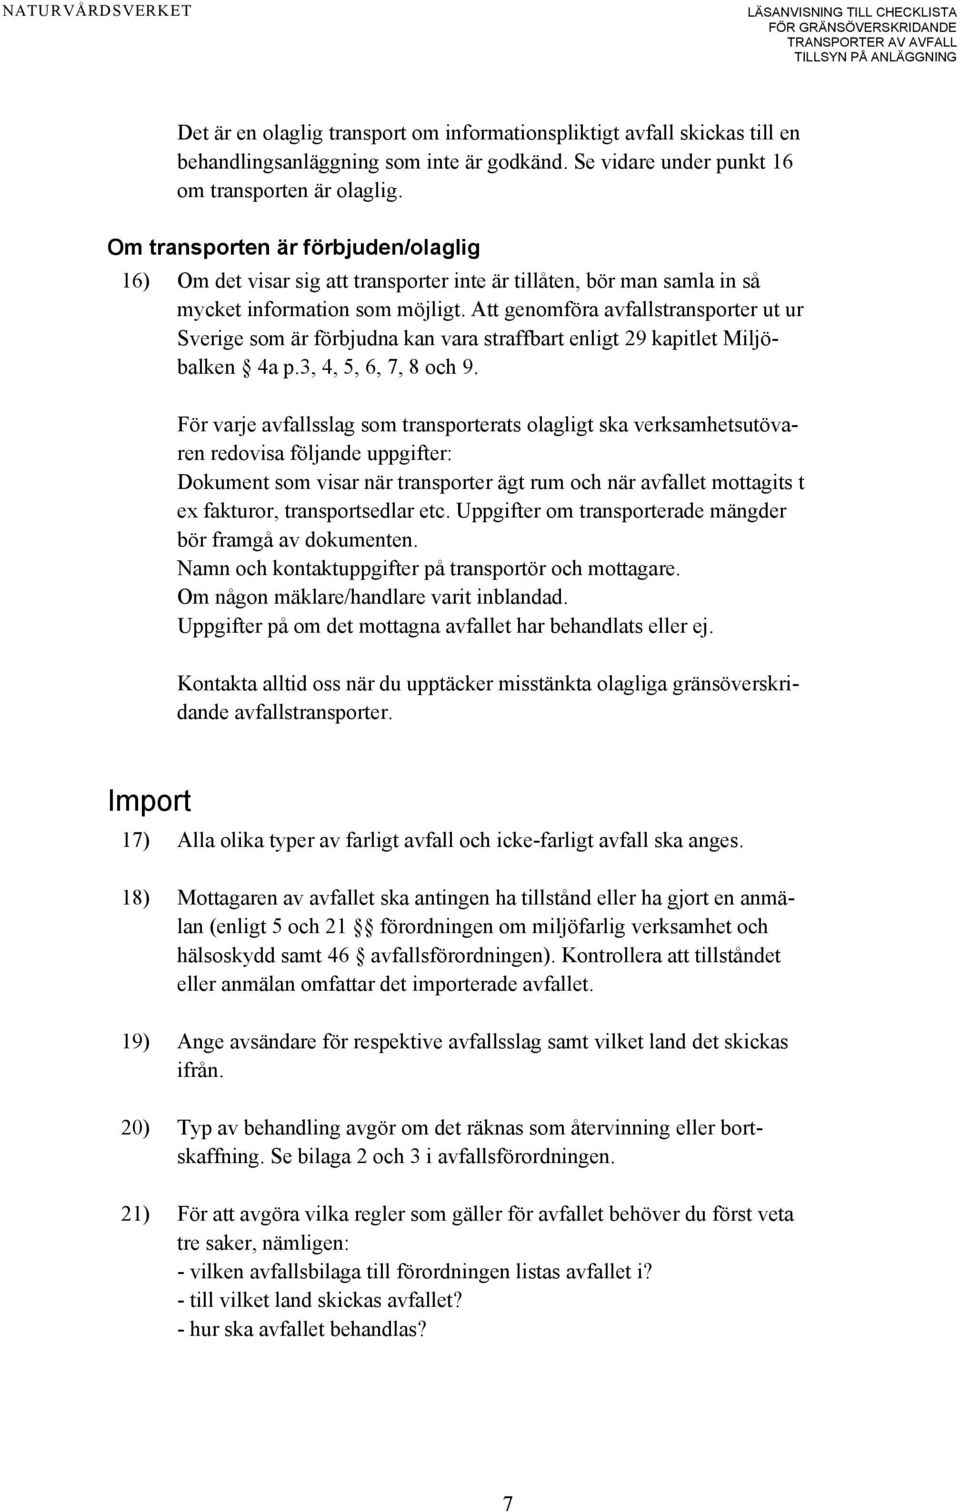 Att genomföra avfallstransporter ut ur Sverige som är förbjudna kan vara straffbart enligt 29 kapitlet Miljöbalken 4a p.3, 4, 5, 6, 7, 8 och 9.